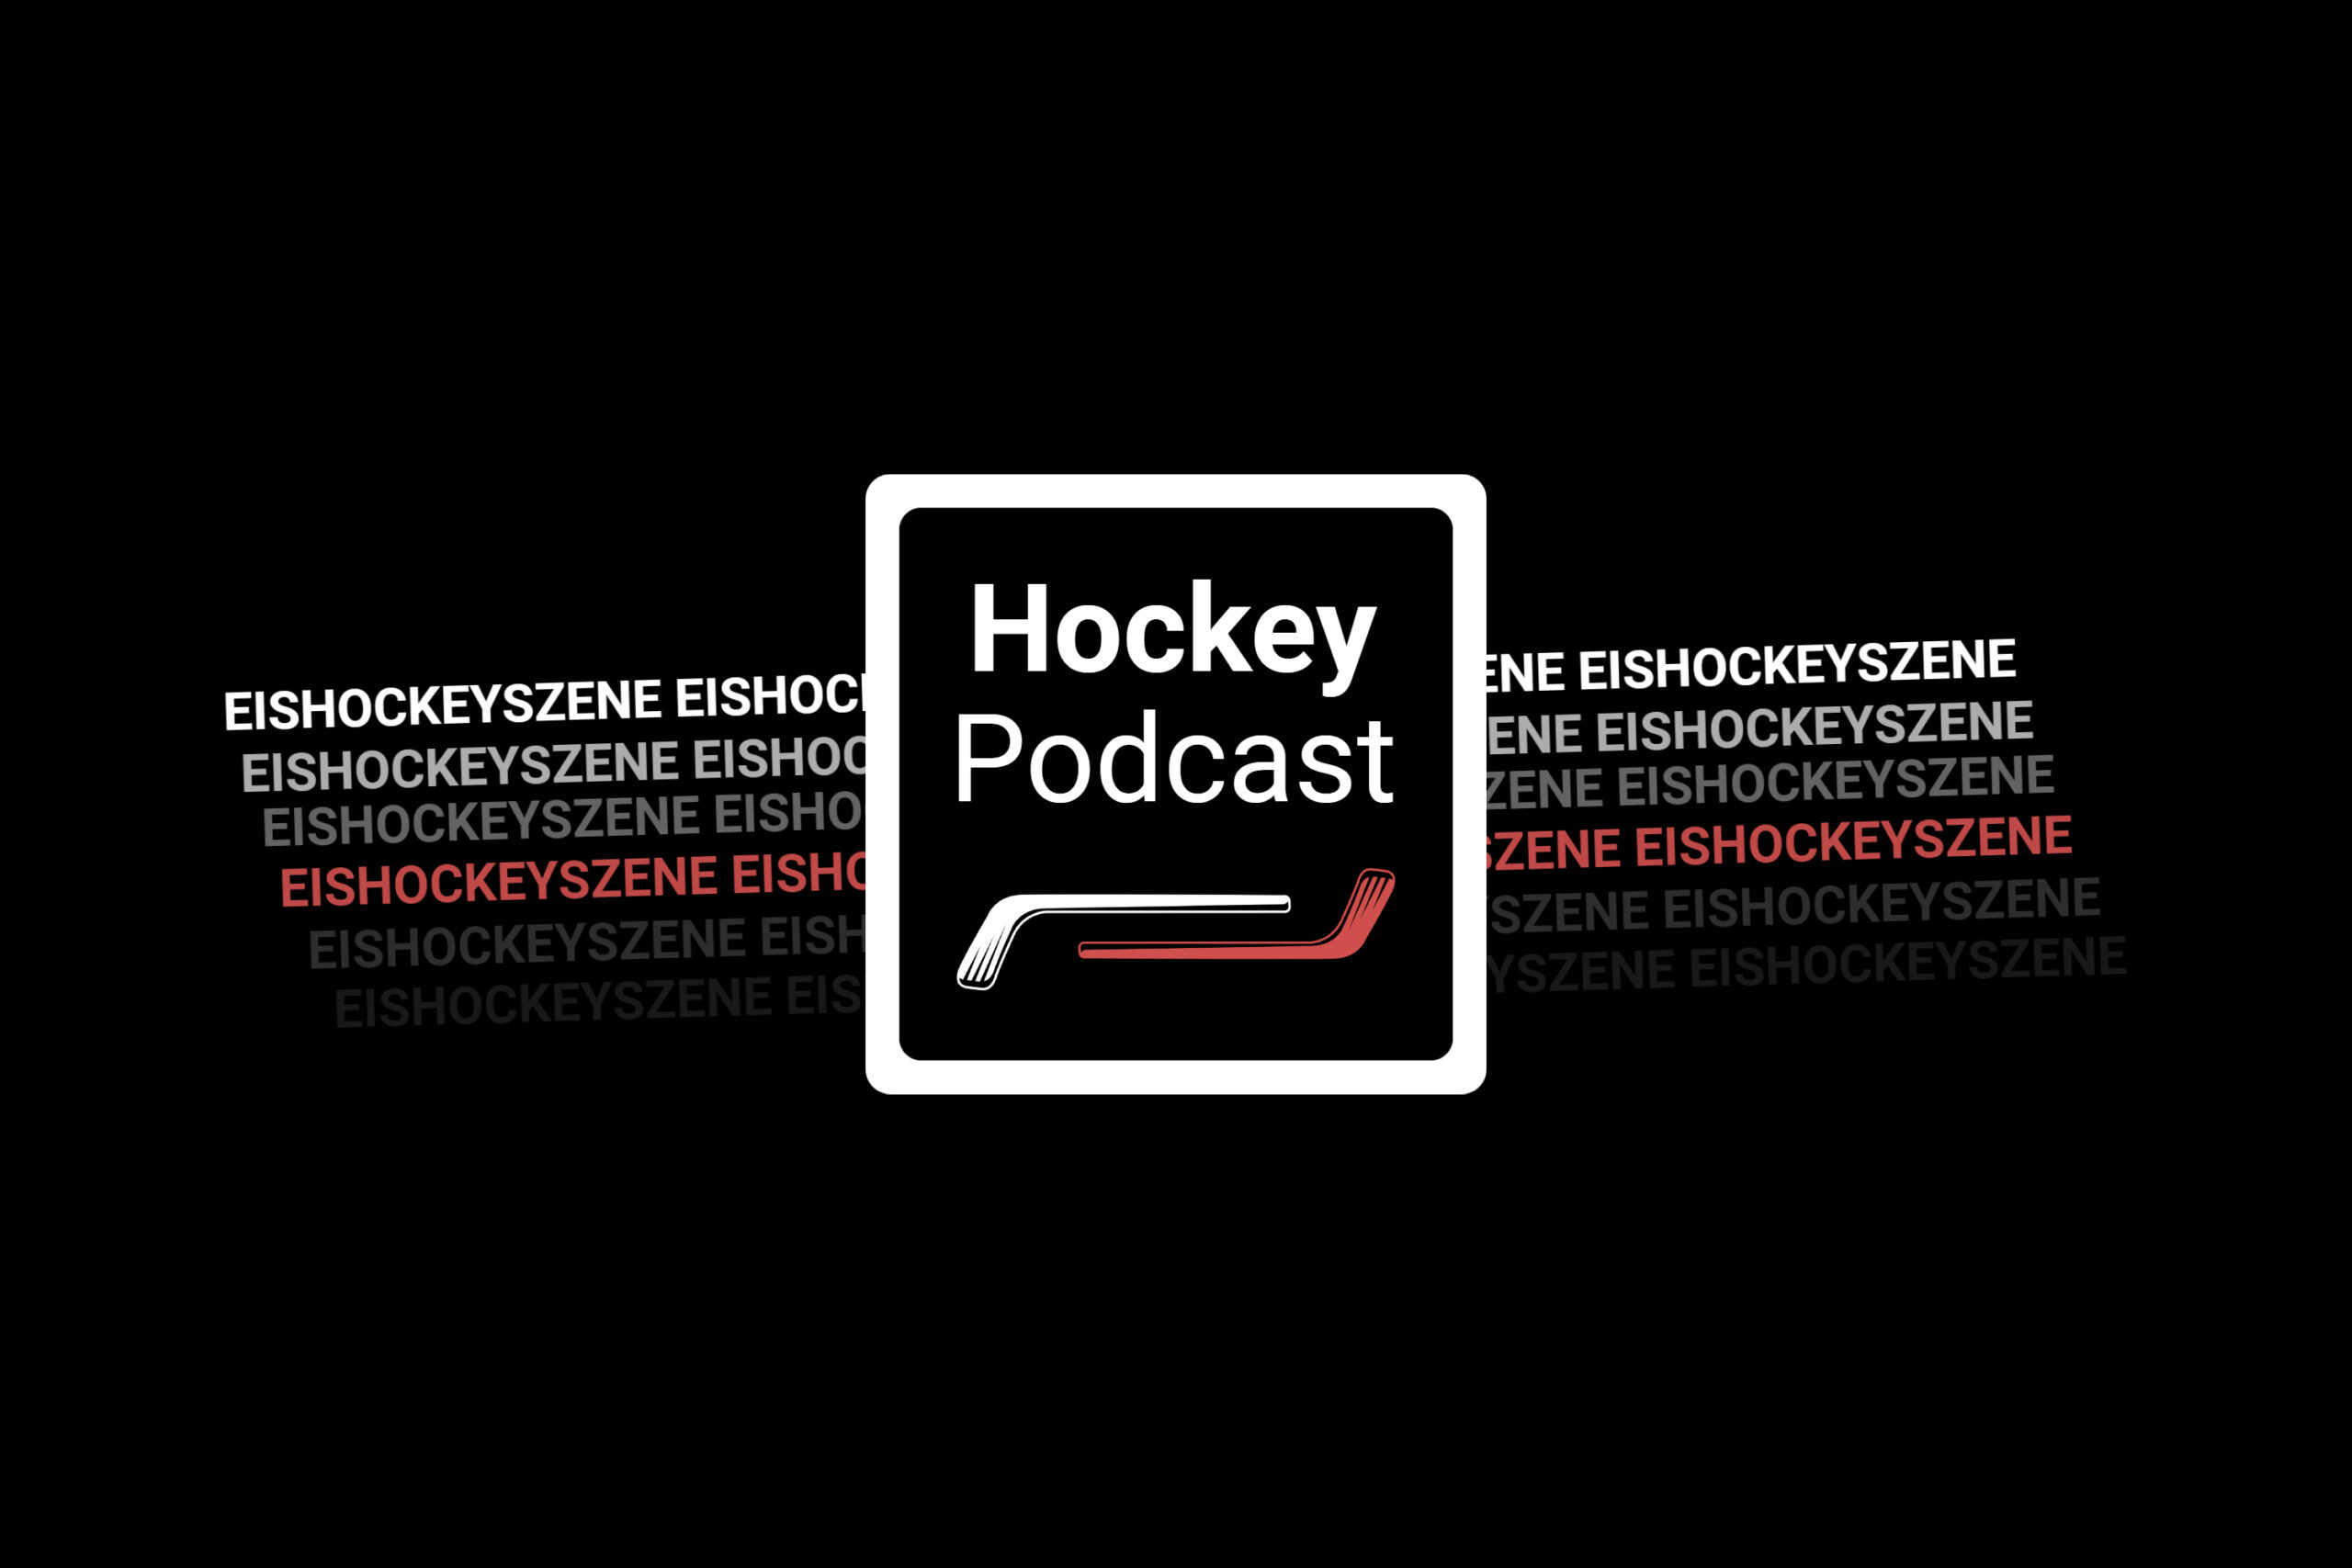 Hockey Podcast